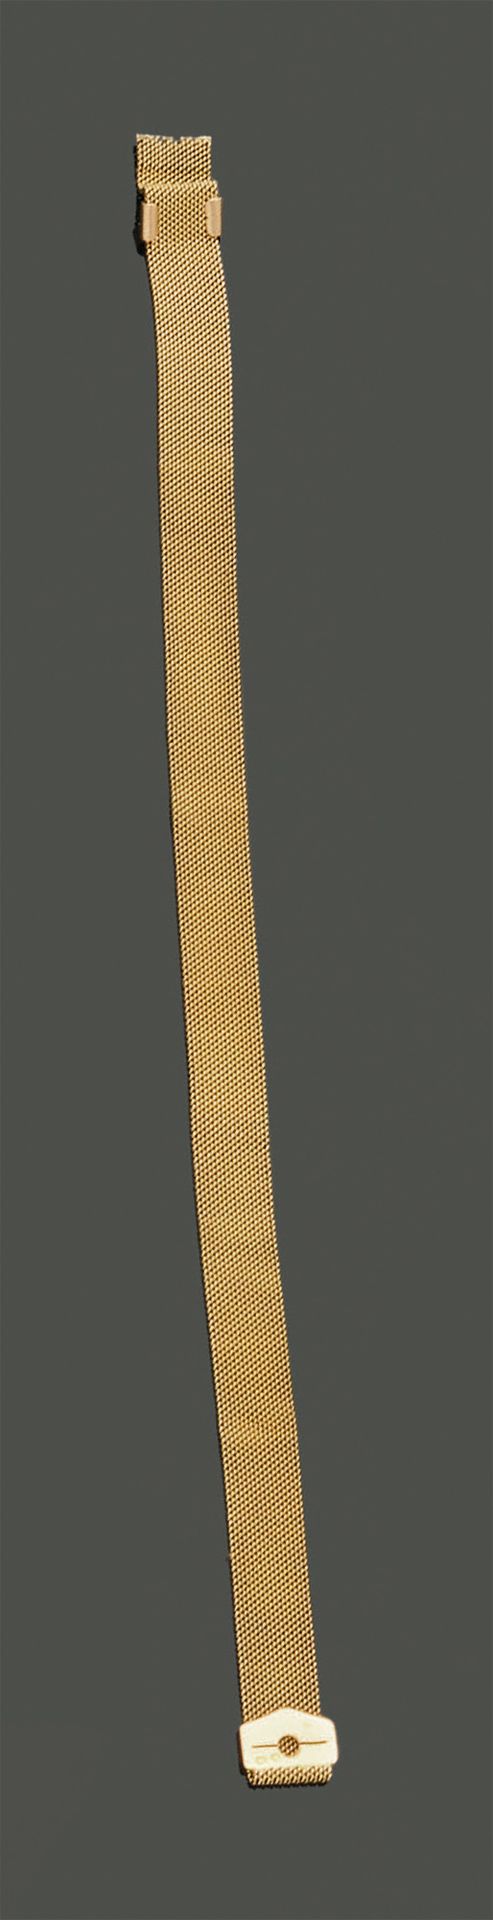 Null Fino brazalete de oro amarillo de 18 quilates (750). Peso: 12,89 g.